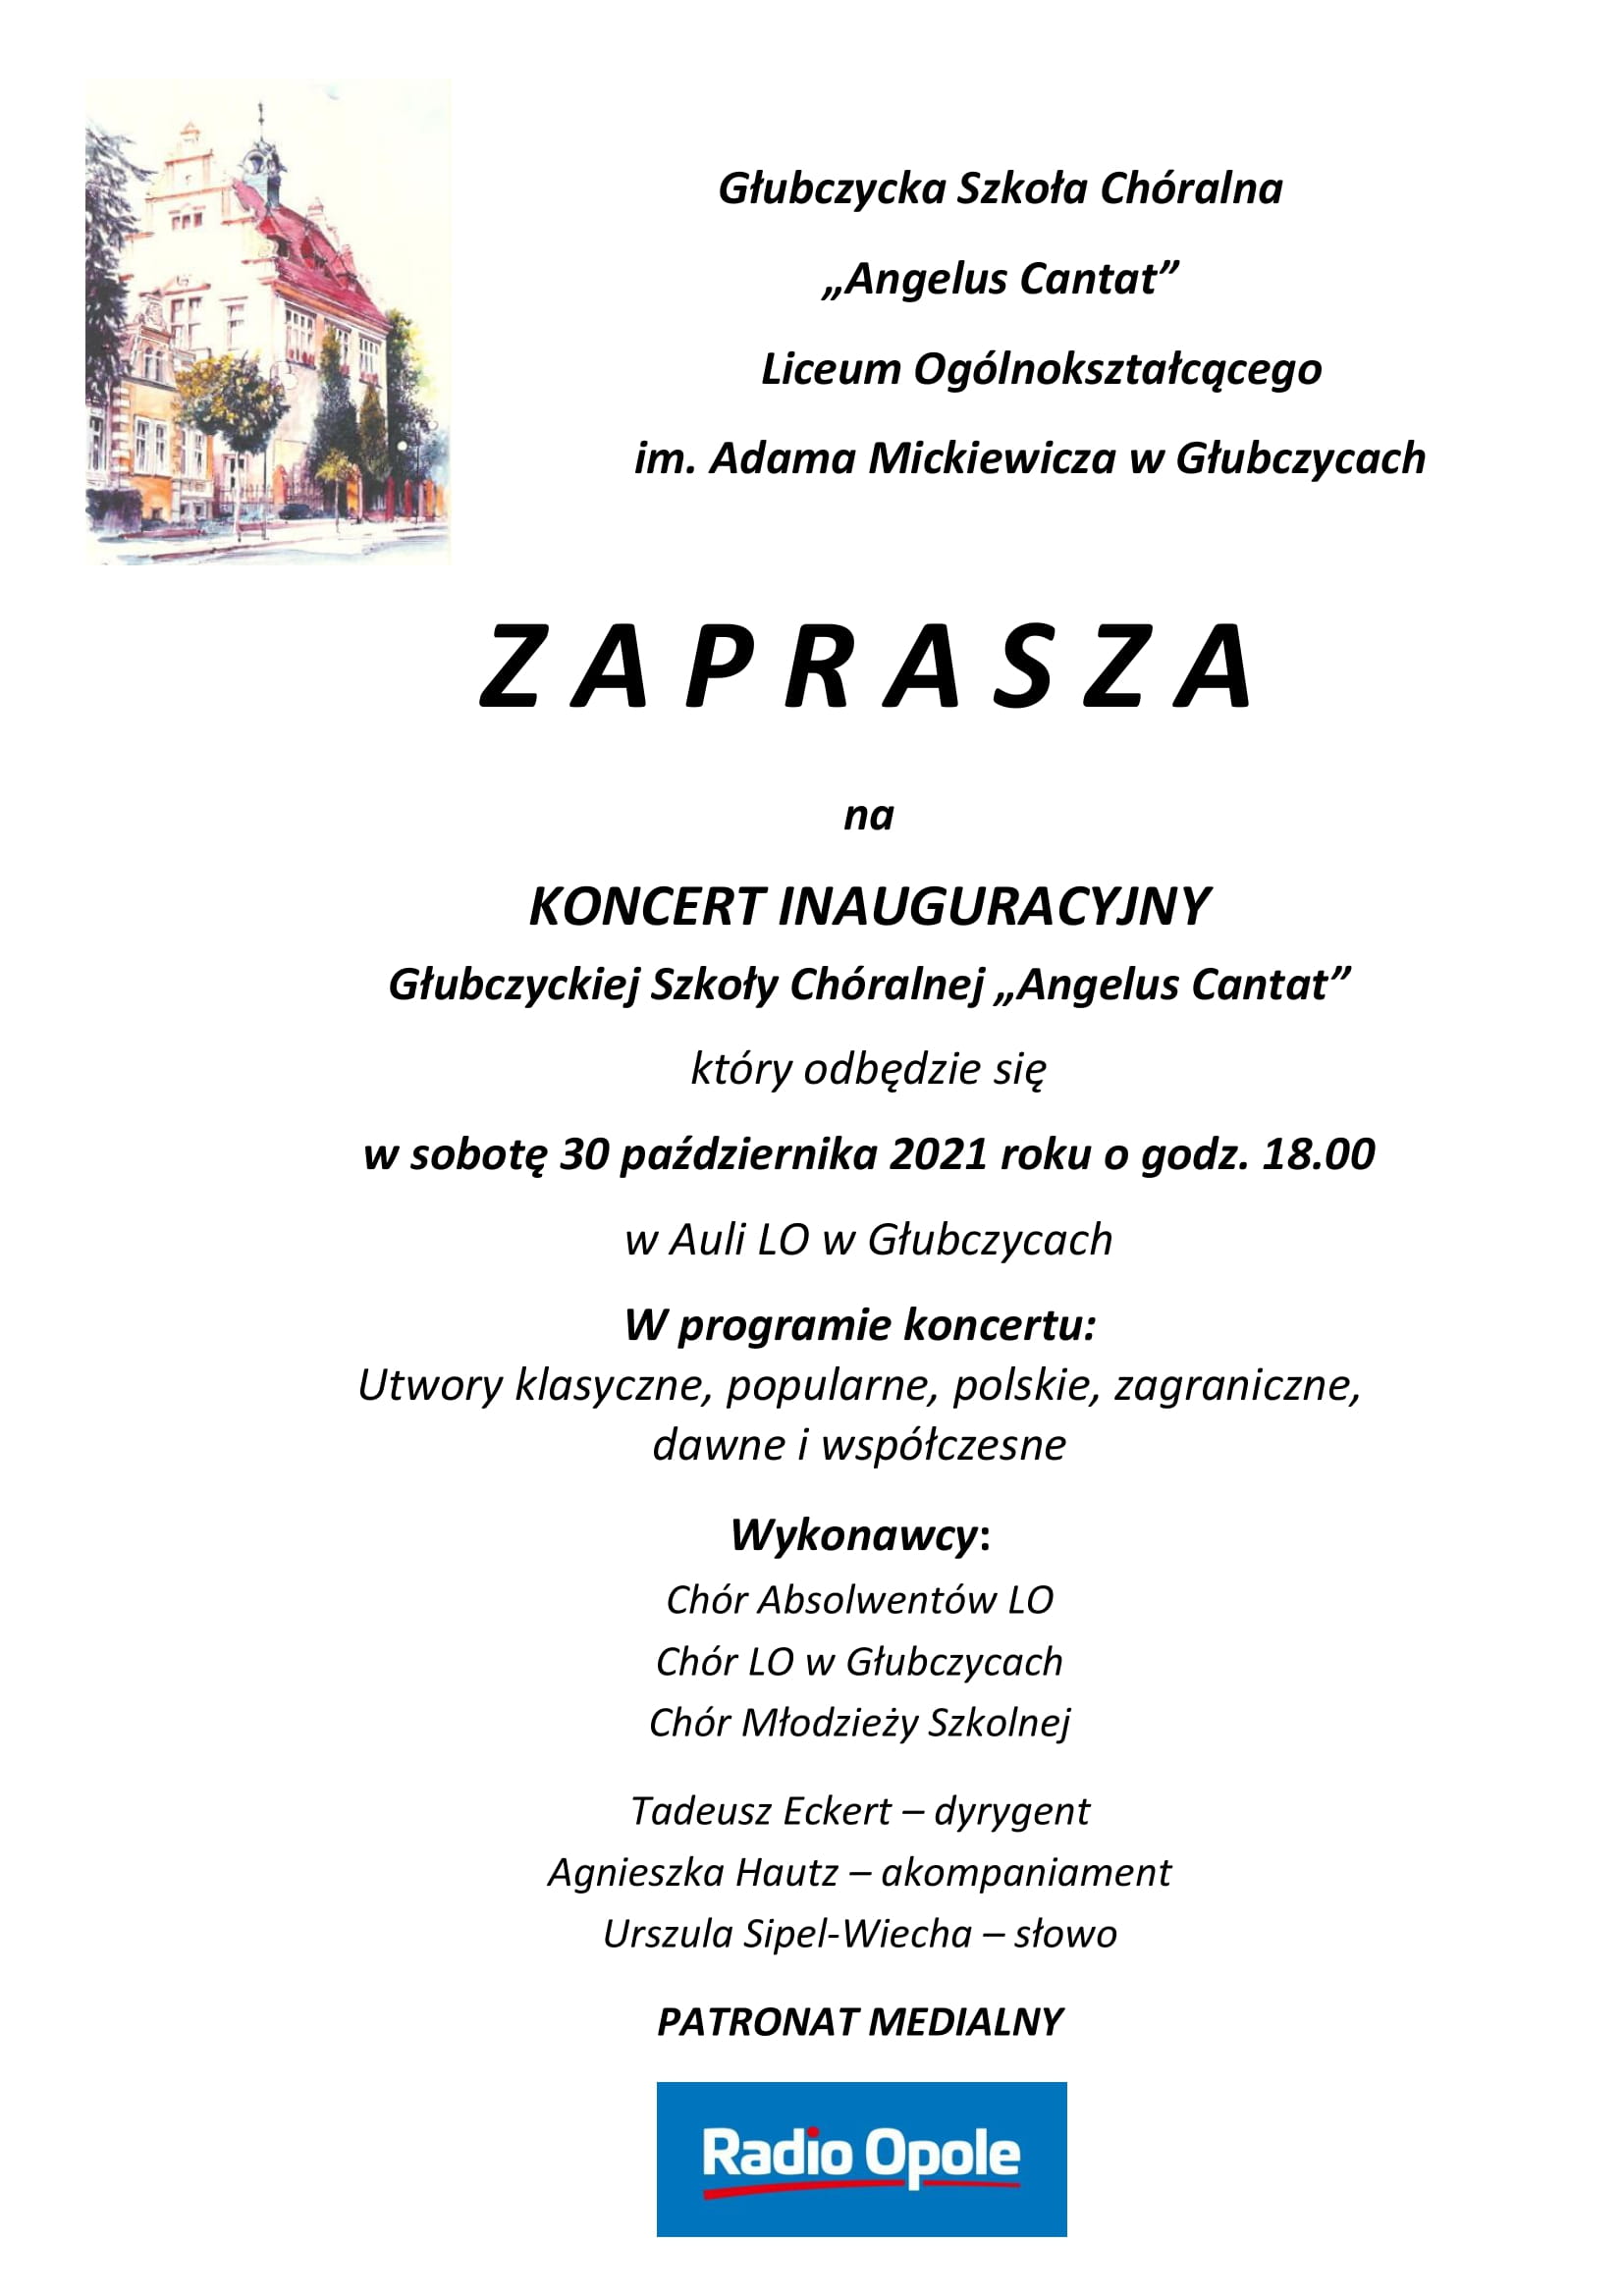 Głubczycka Szkoła Chóralna 'Angelus Cantat' - koncert inauguracyjny